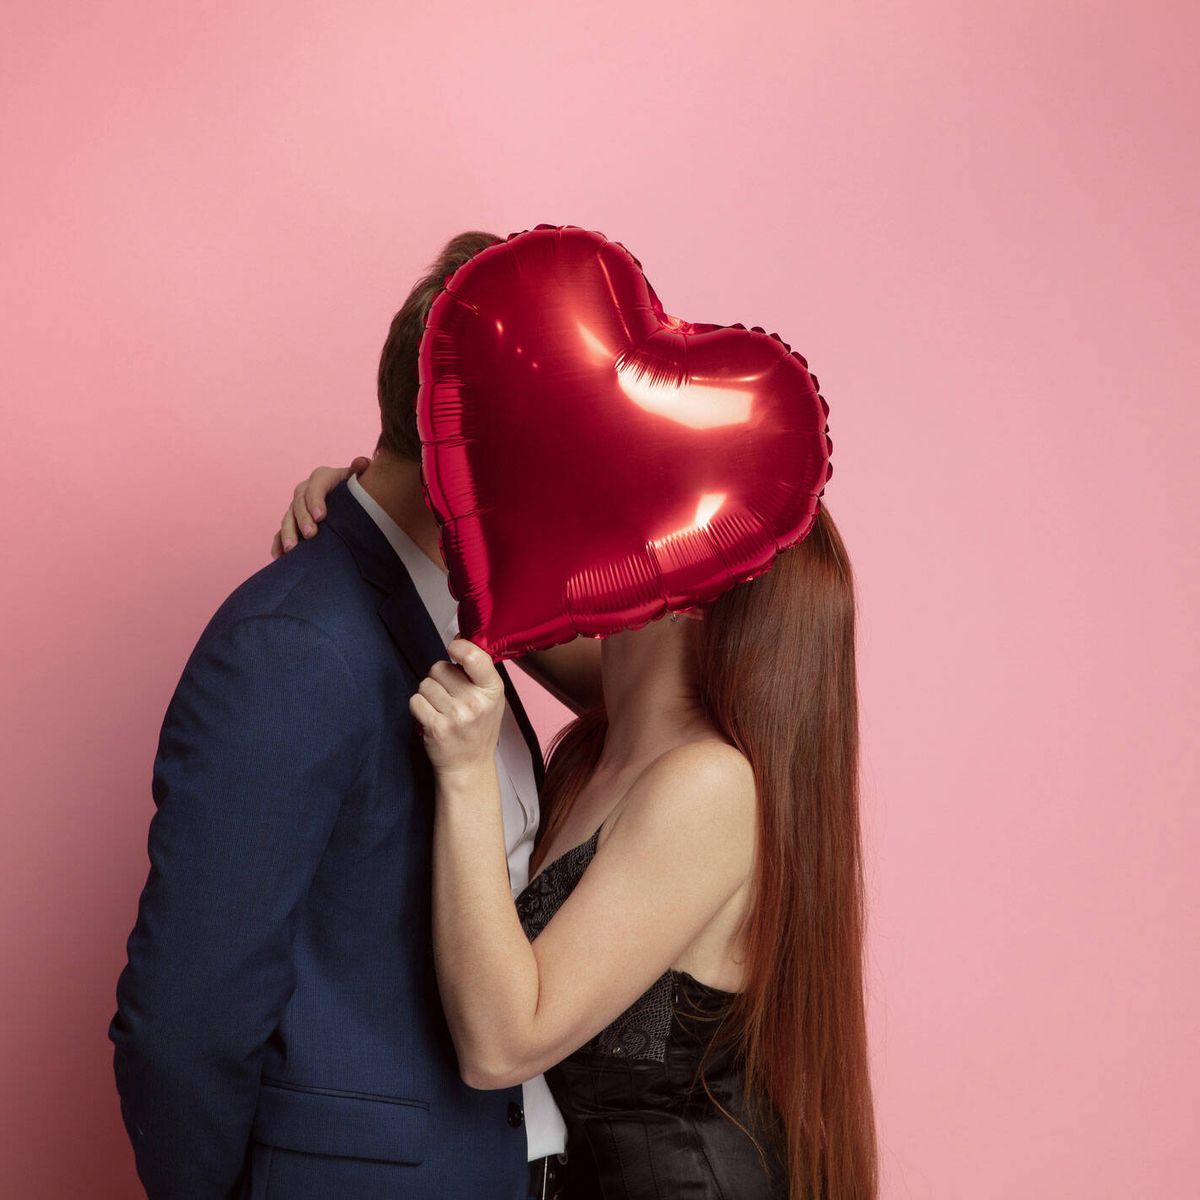 Coherente horario Intuición 14 regalos de San Valentín para hombre que emocionarán a tu pareja